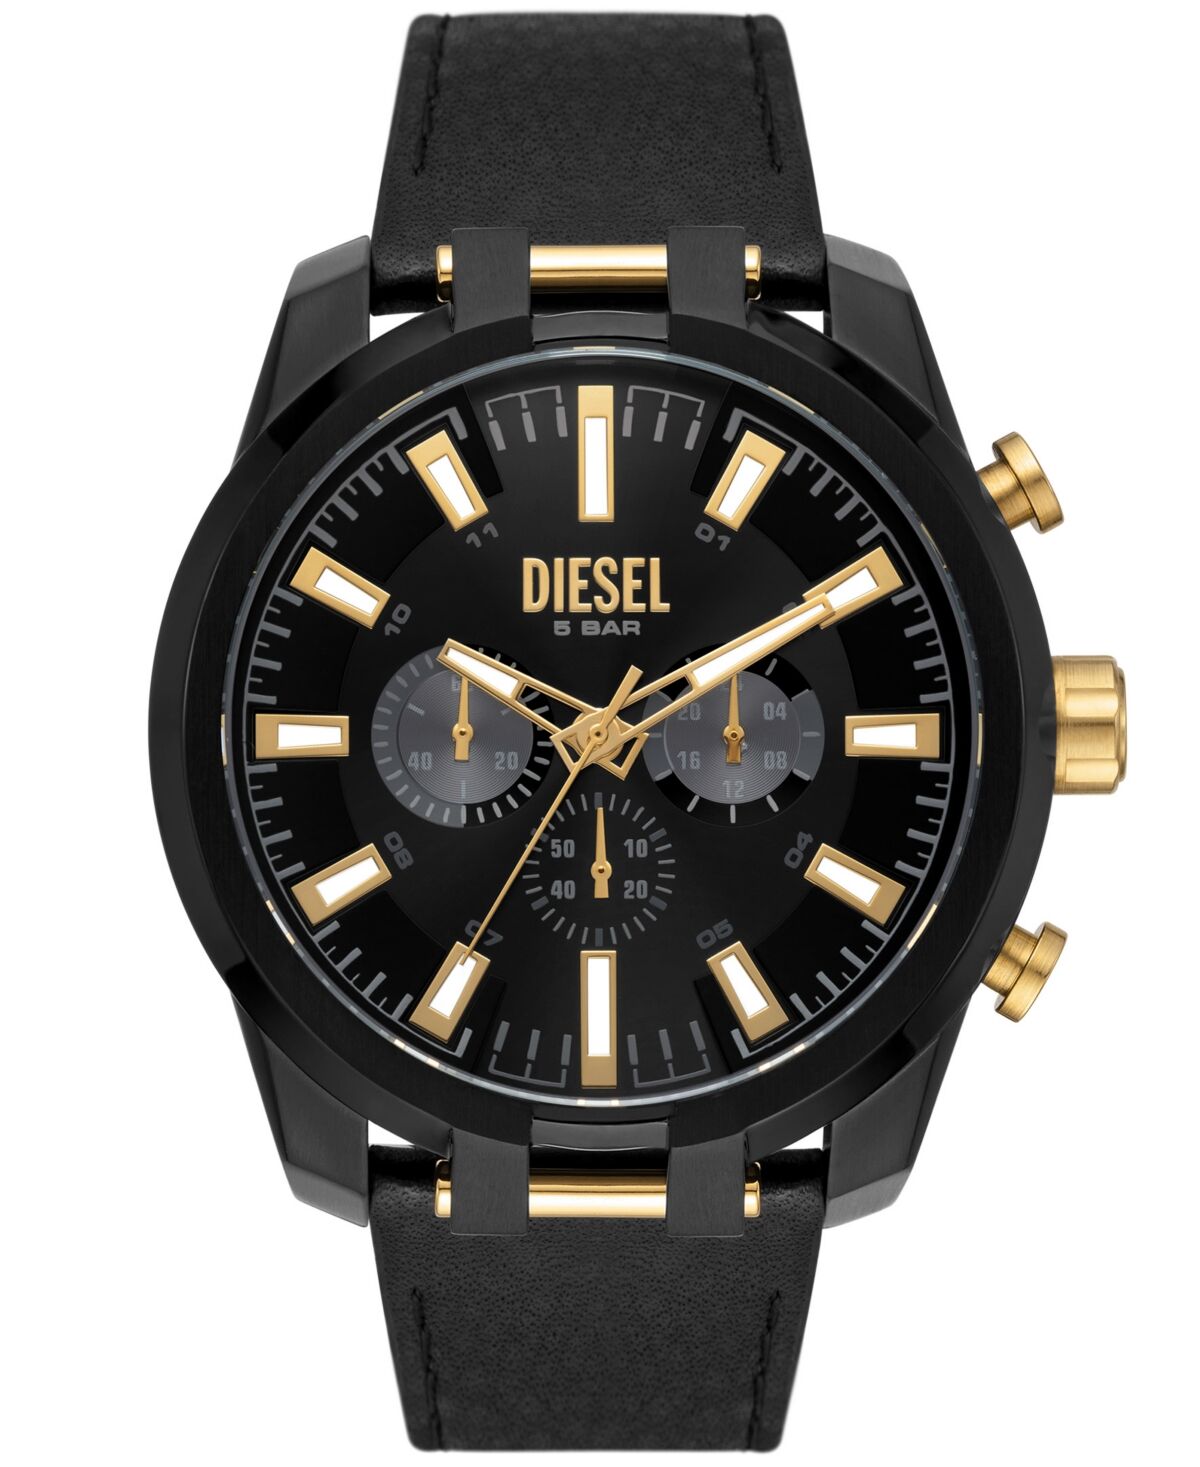 Diesel Men's Split Black Leather Strap Watch, 51mm - Black